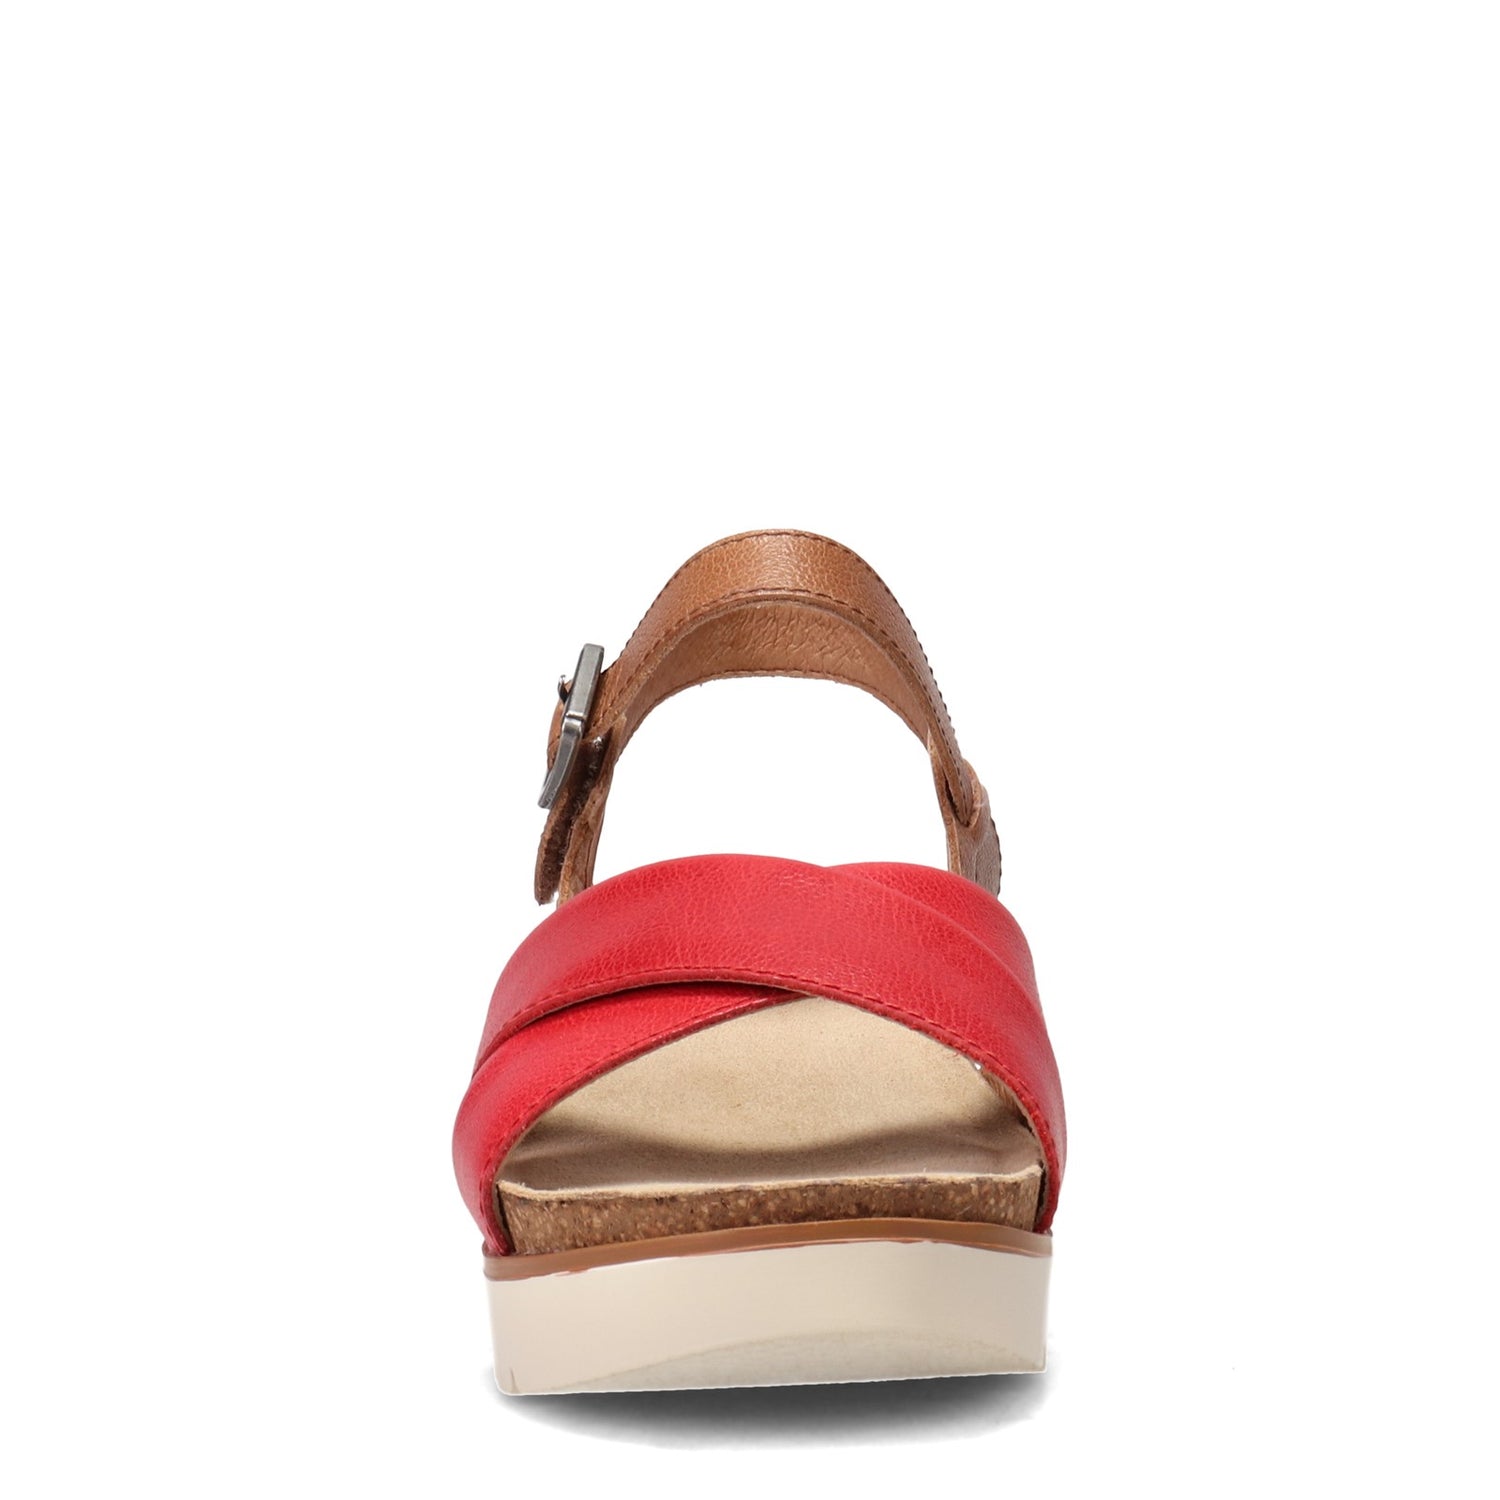 Peltz Shoes  Women's Josef Seibel Clea 10 Sandal RED 72810-128401